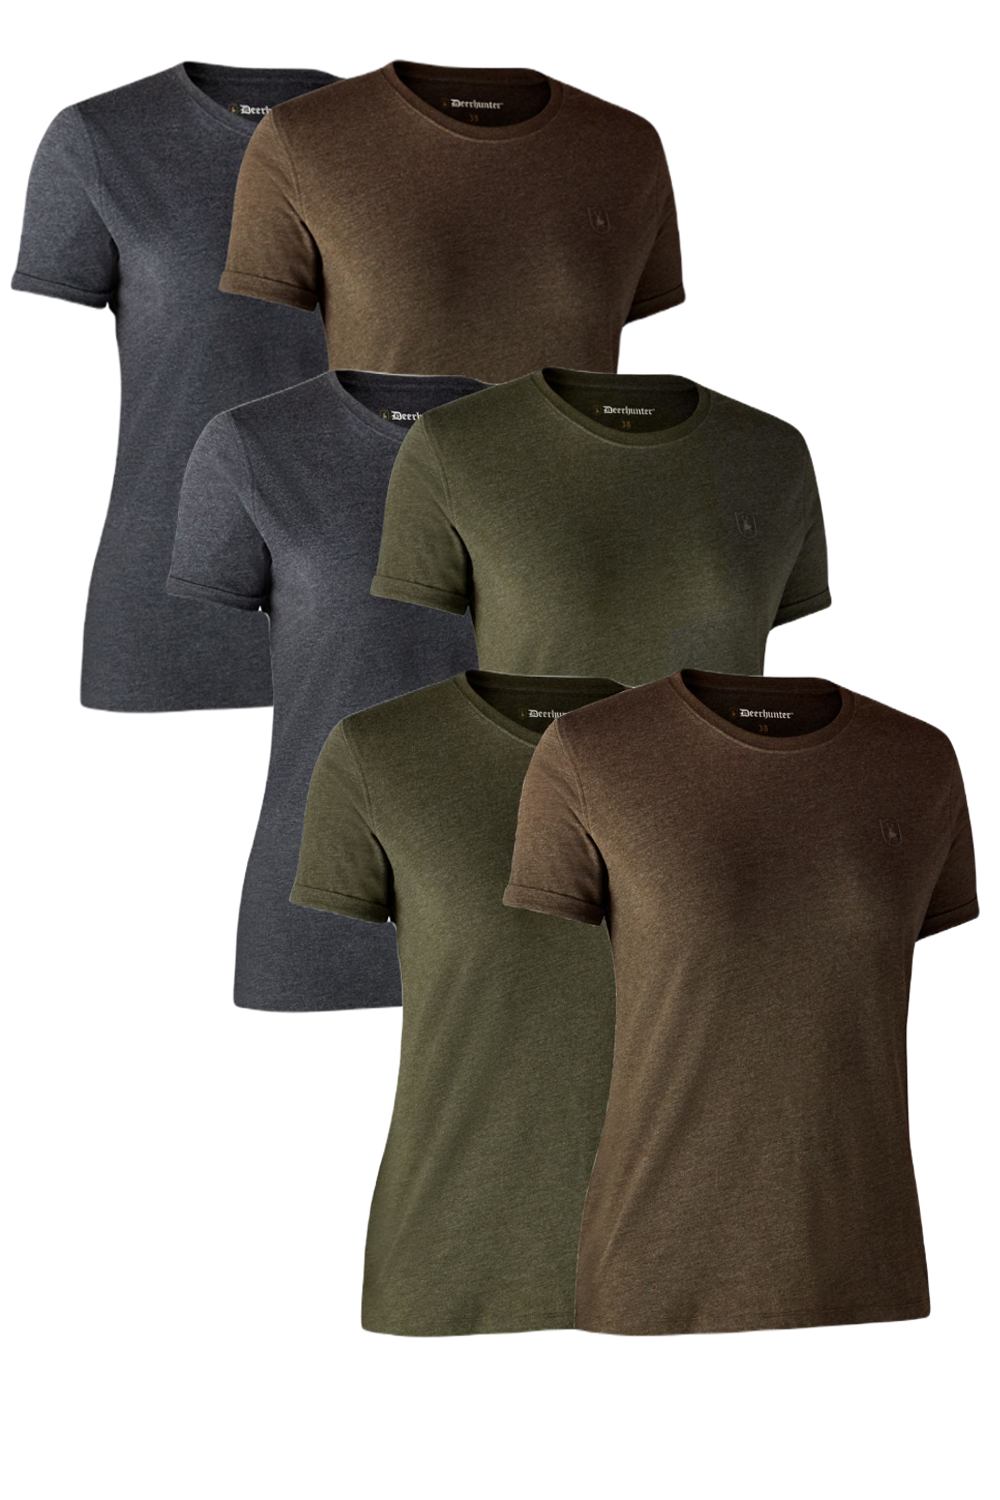 Deerhunter Ladies Basic 2-Pack T-Shirt In Adventure Green Melange, Brown Leaf Melange, Adventure Green/Brown Leaf Melange 